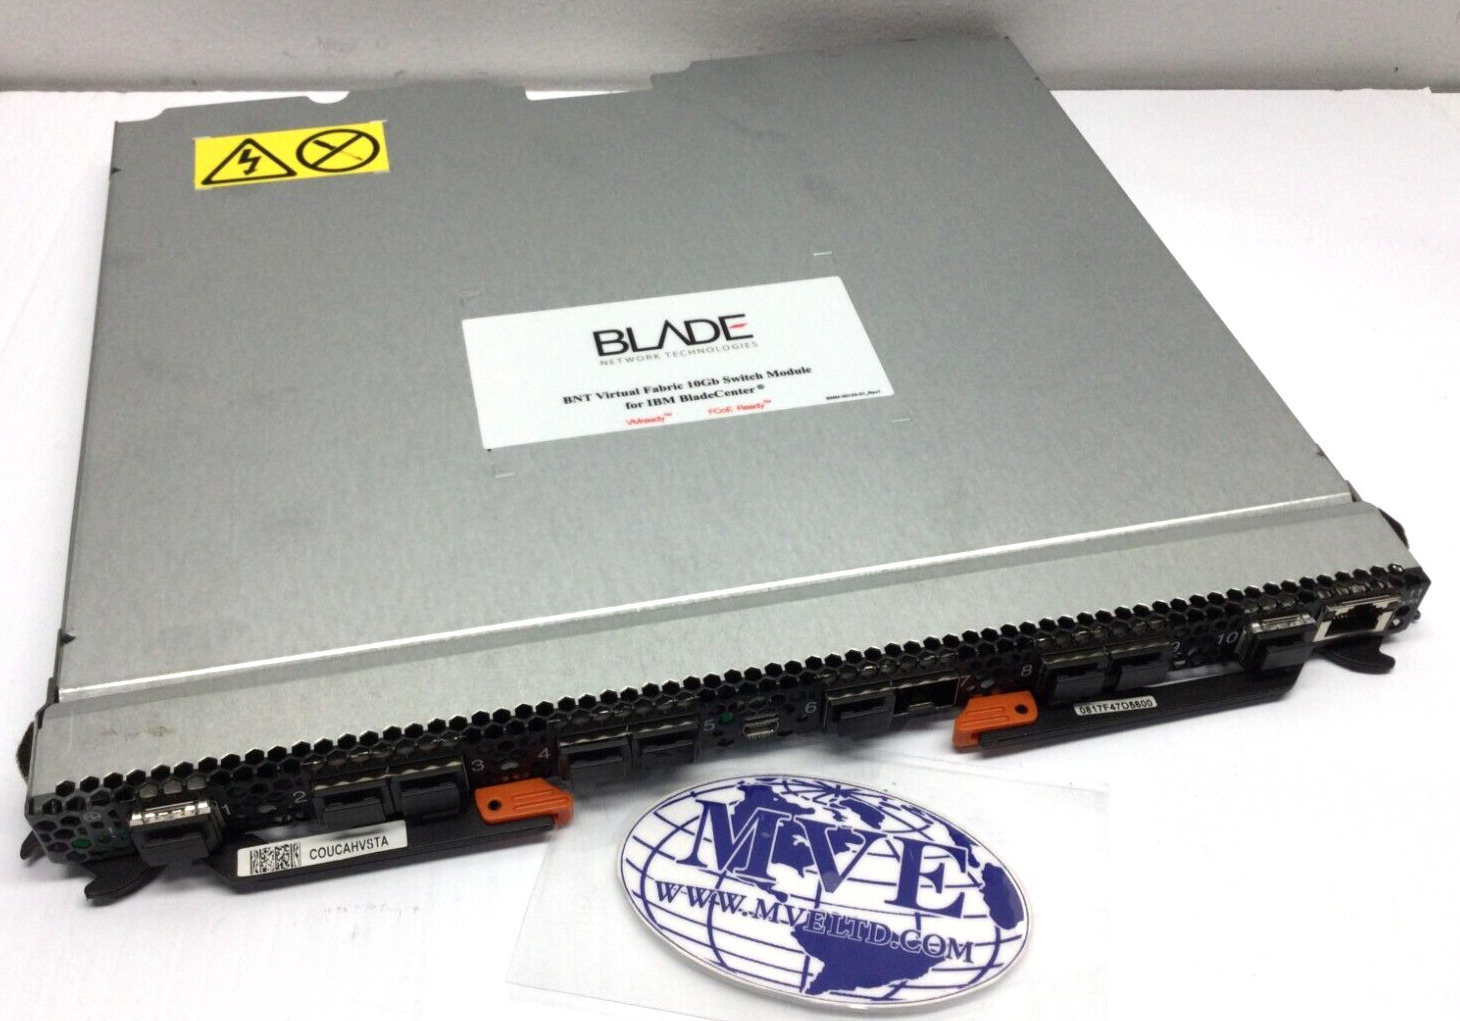 IBM 90Y9392 90Y9391 46C7191 BN-JNC-F BNT VIRTUAL FABRIC 10GB SWITCH MODULE BLADE